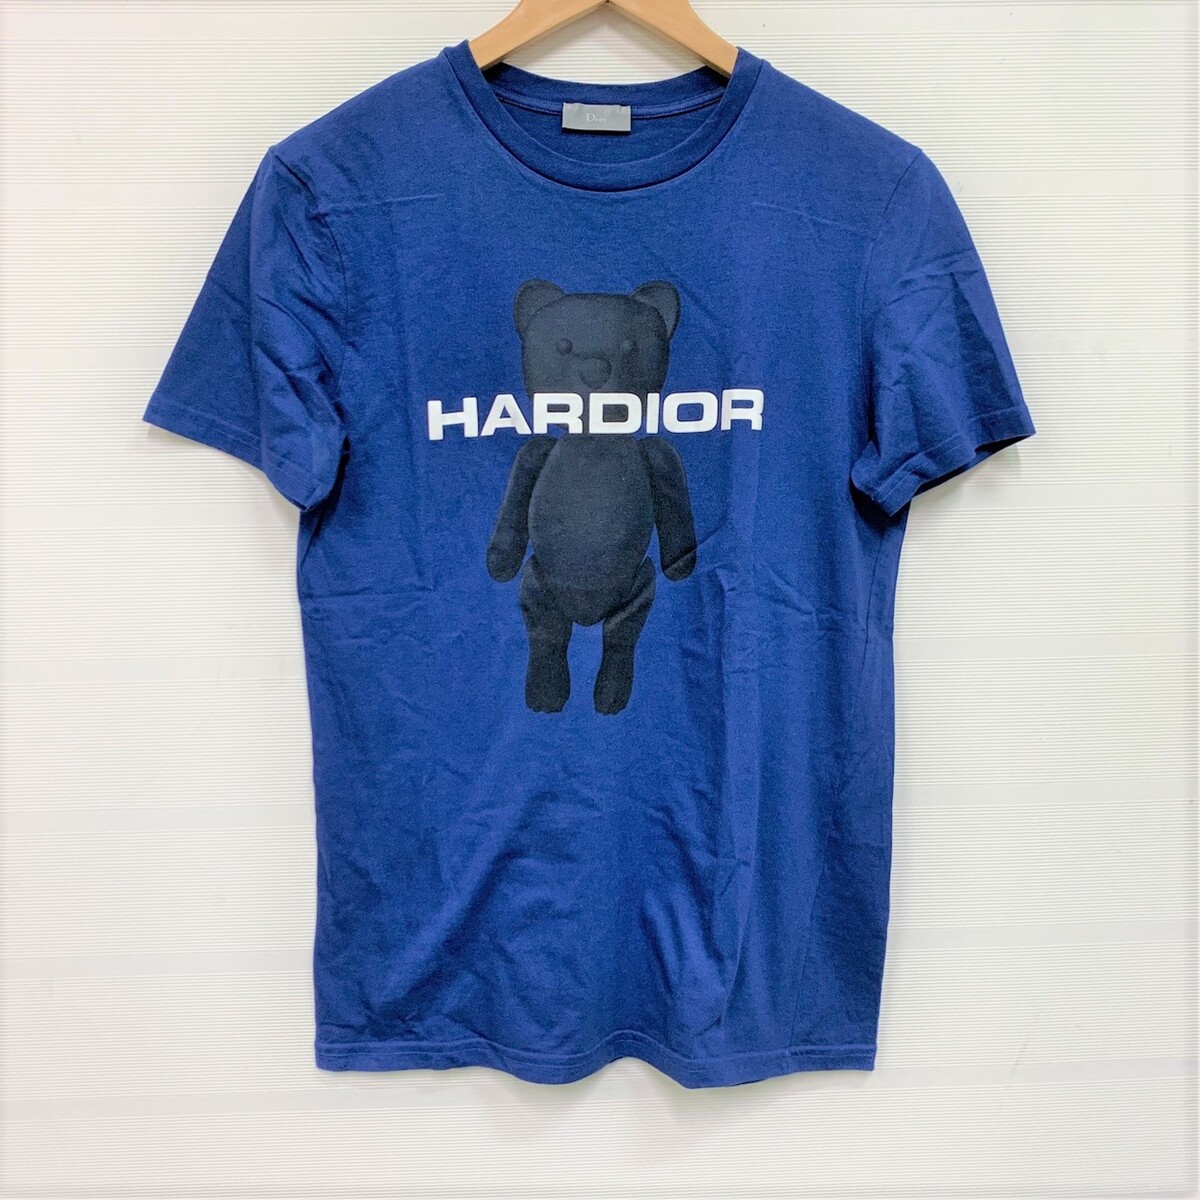 ディオールオムのブルー HARDIORベアプリント Tシャツの買取実績です。